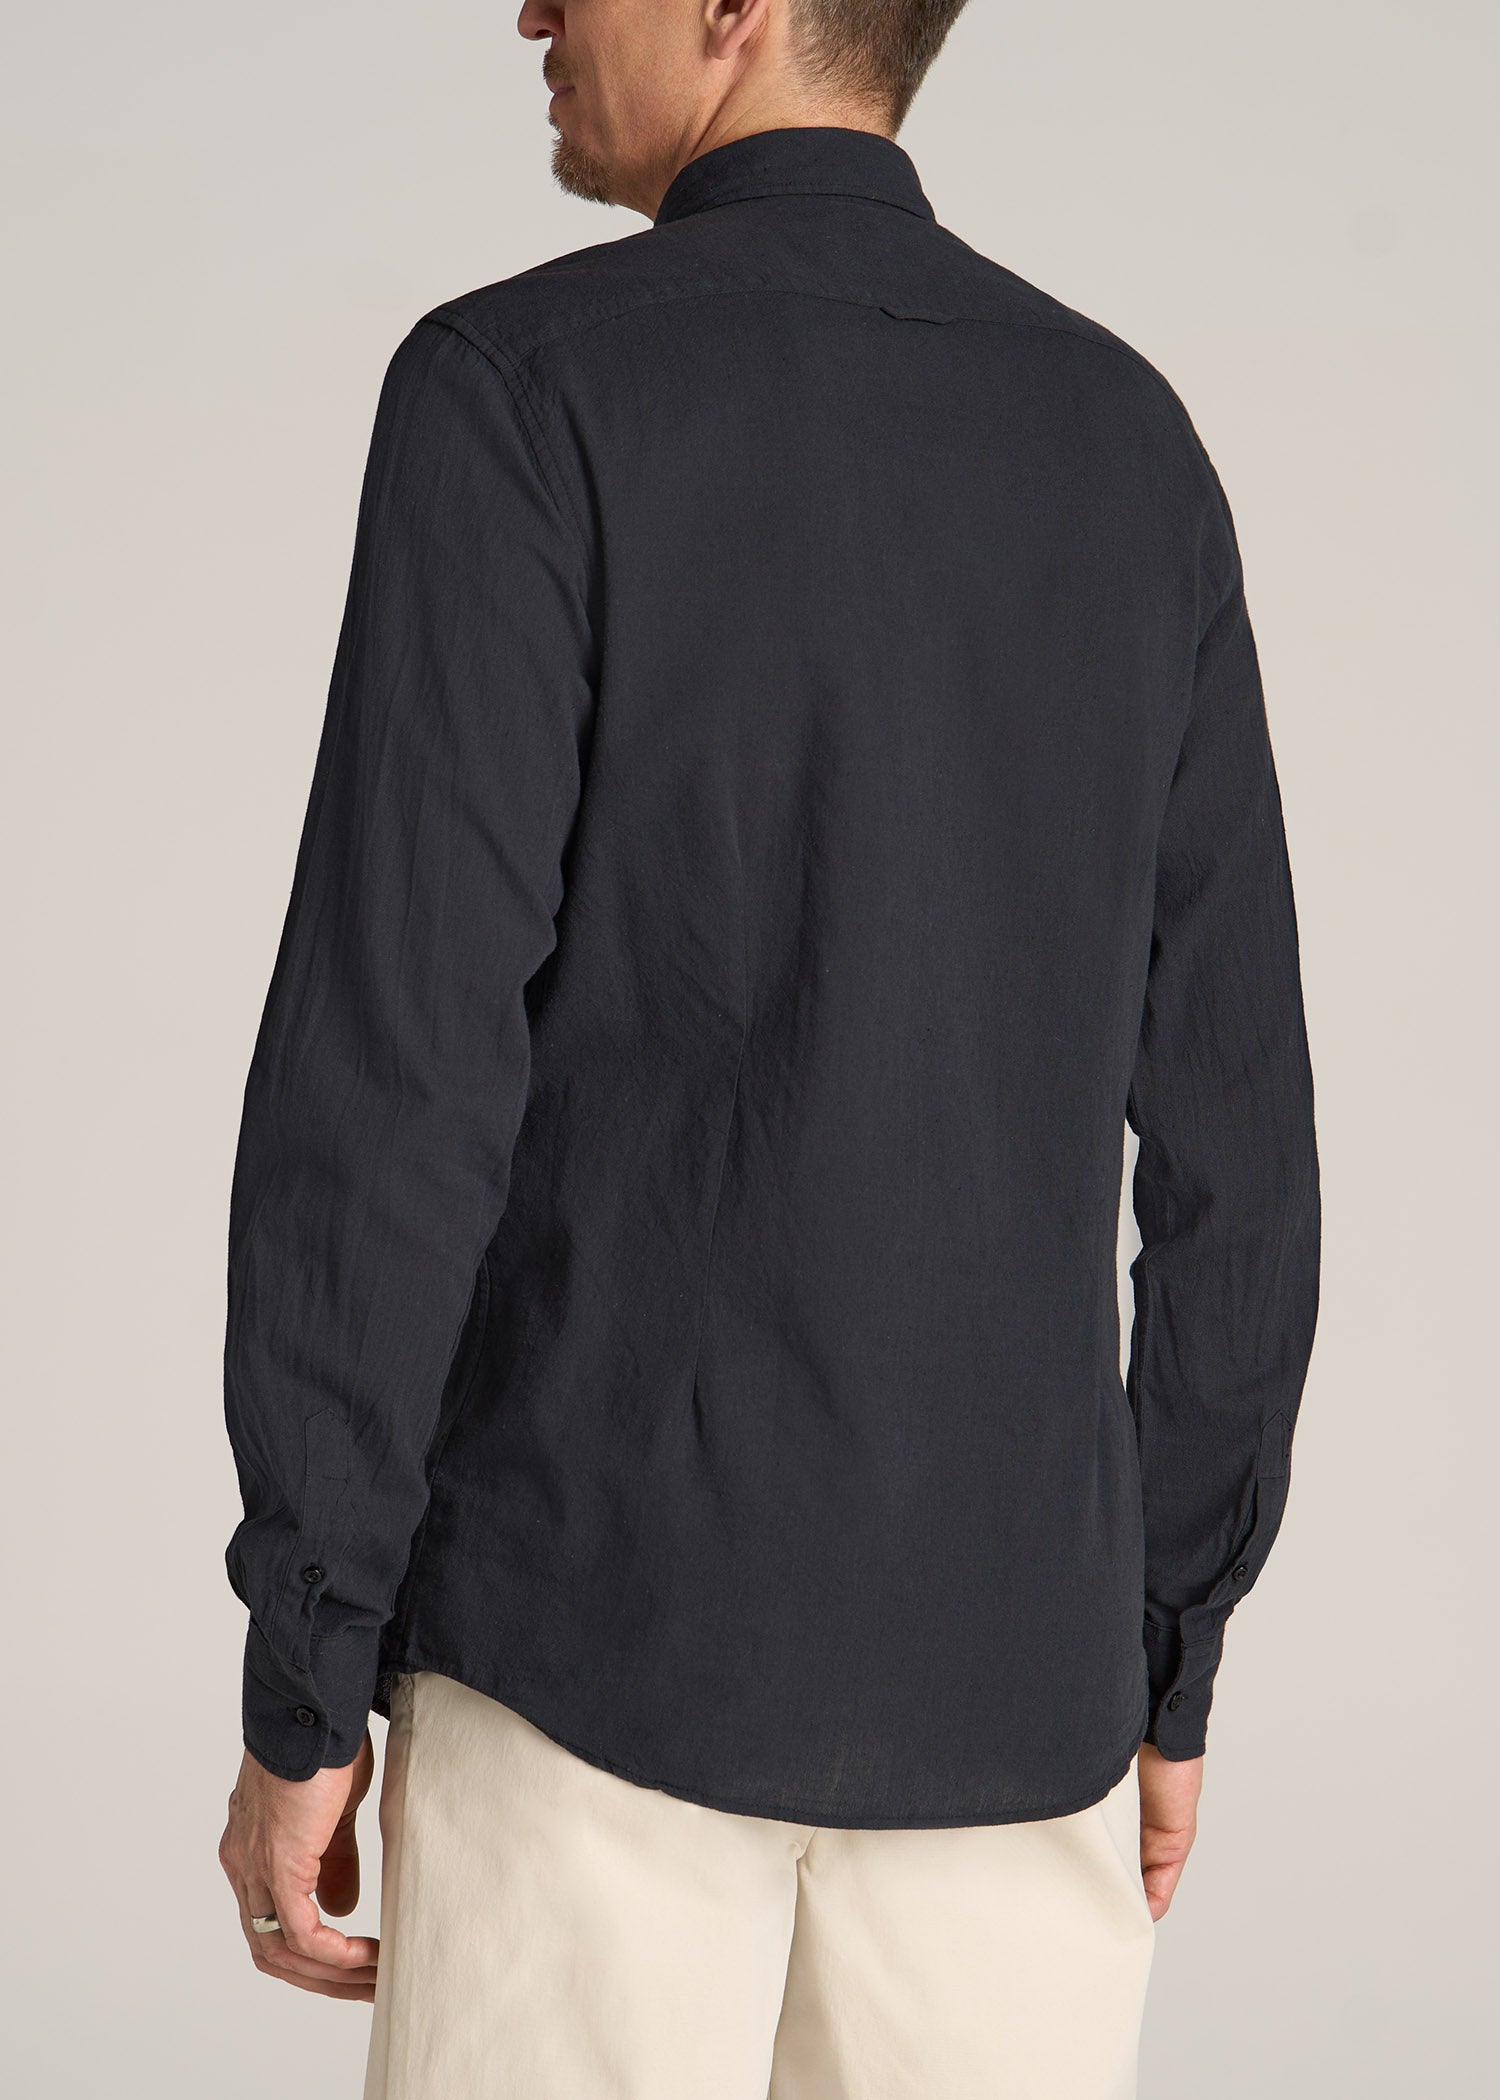 Long Sleeve Shirt for Tall Men: Linen Black Shirt